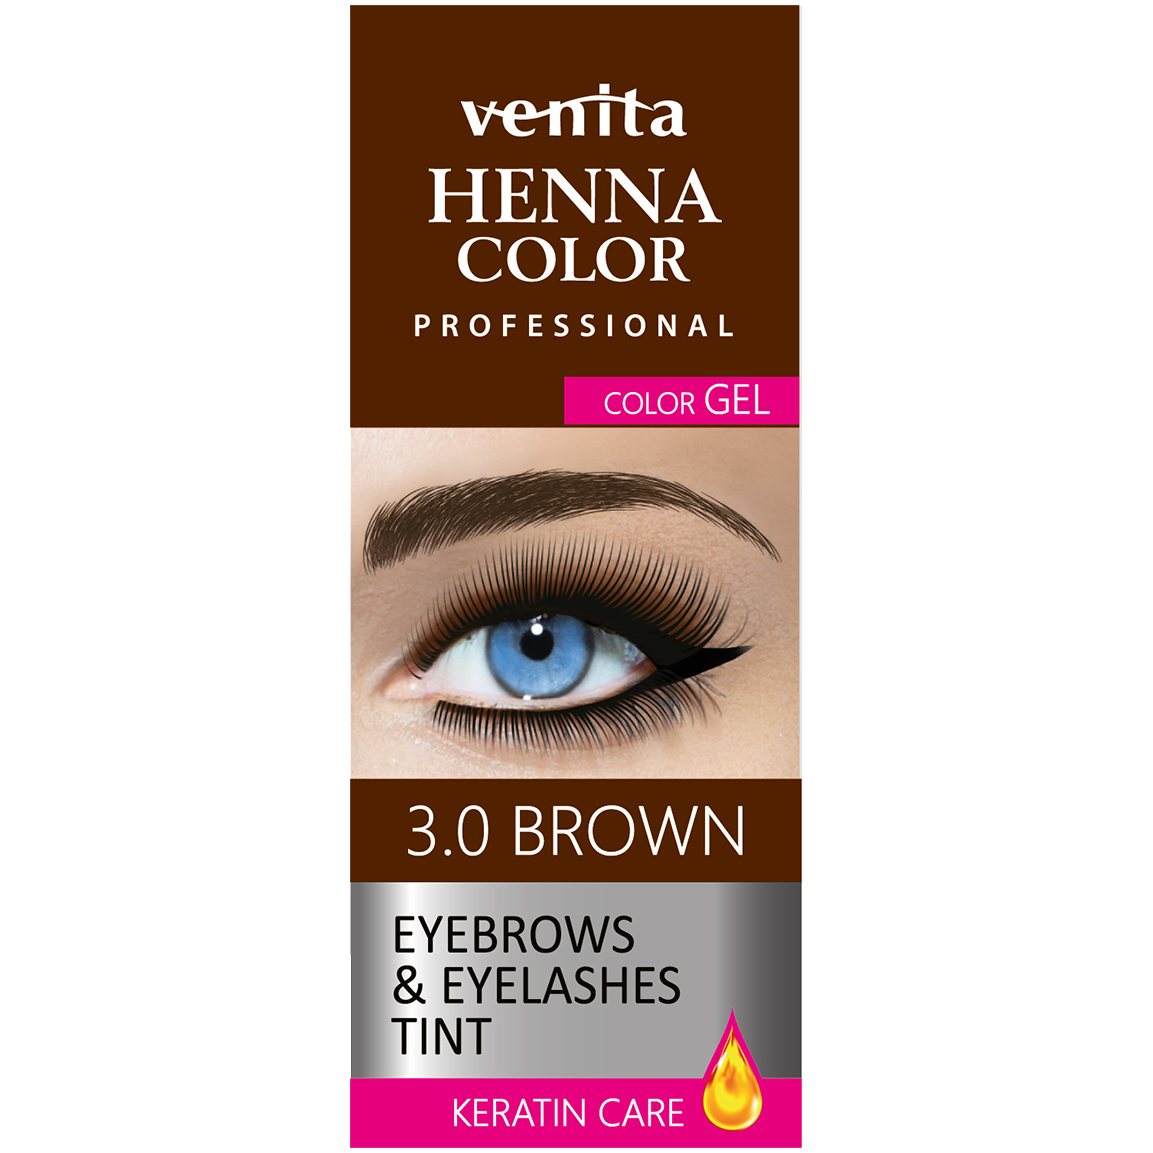 Venita Henna Color хна в геле для бровей 3.0 коричневая, 30 г